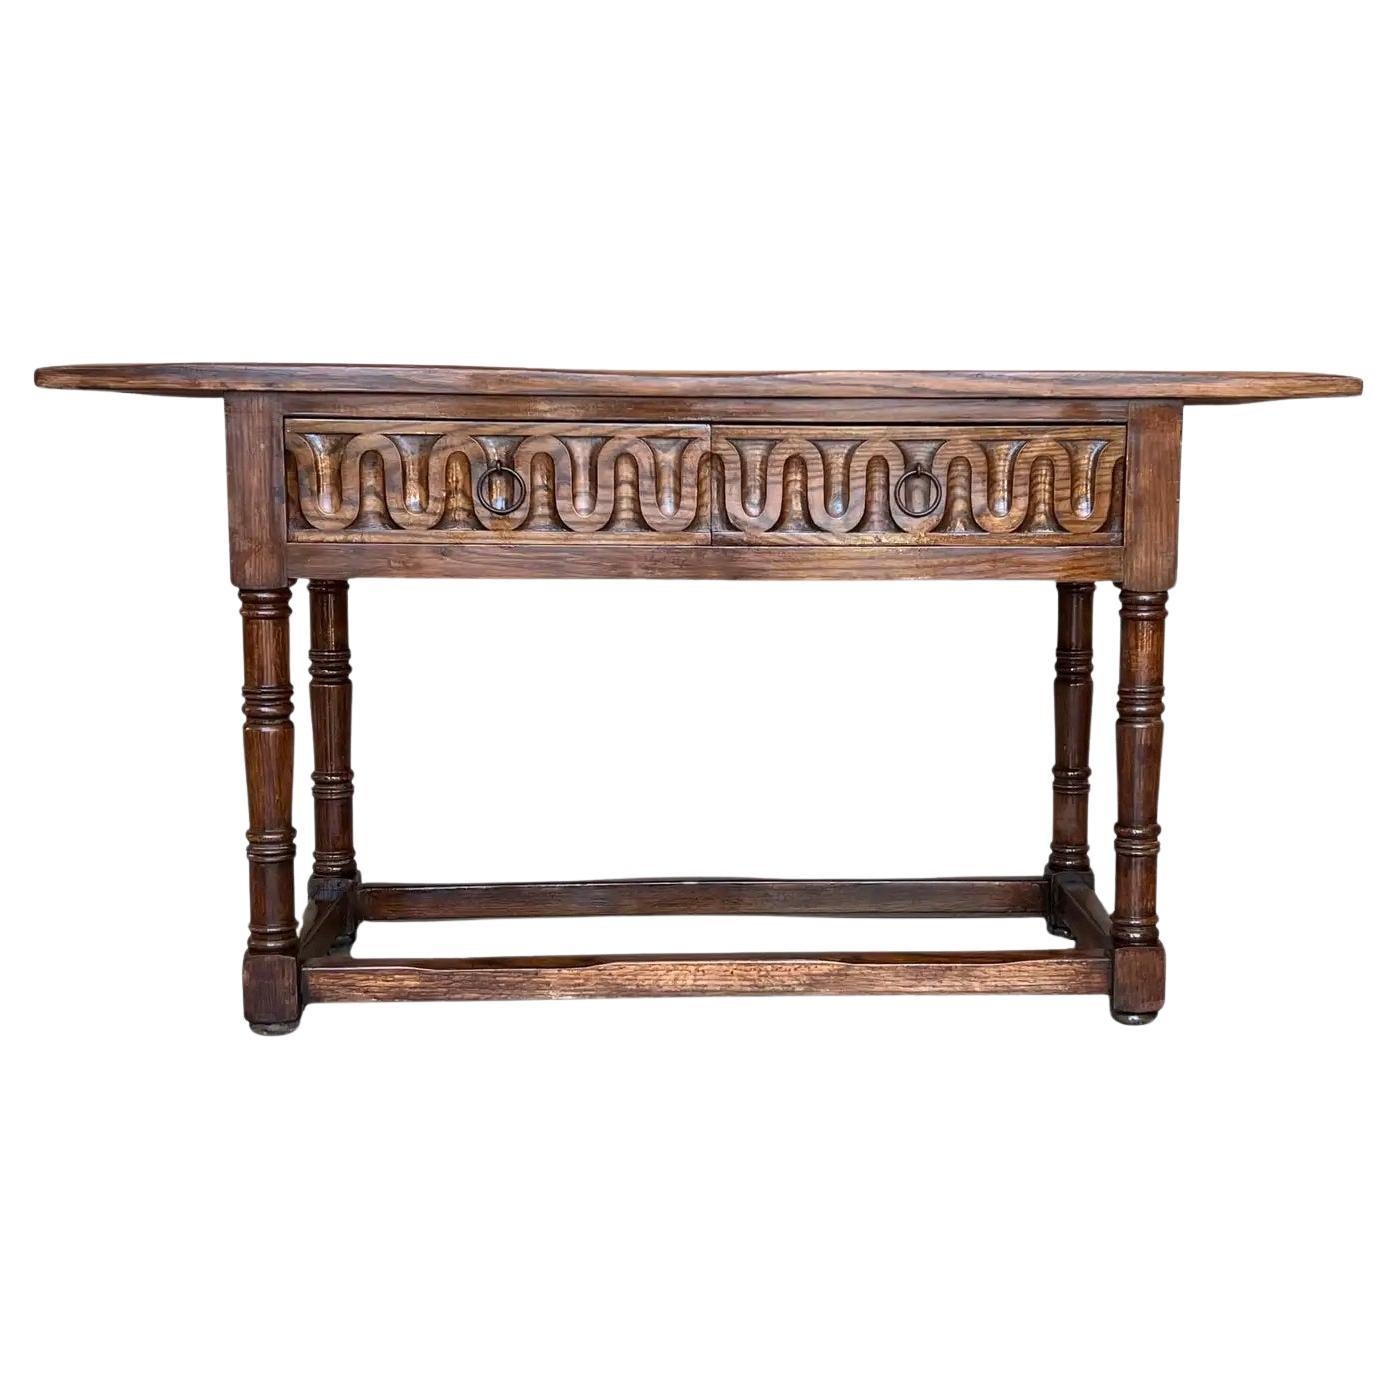 Table console espagnole sculptée du début du 20e siècle avec deux tiroirs